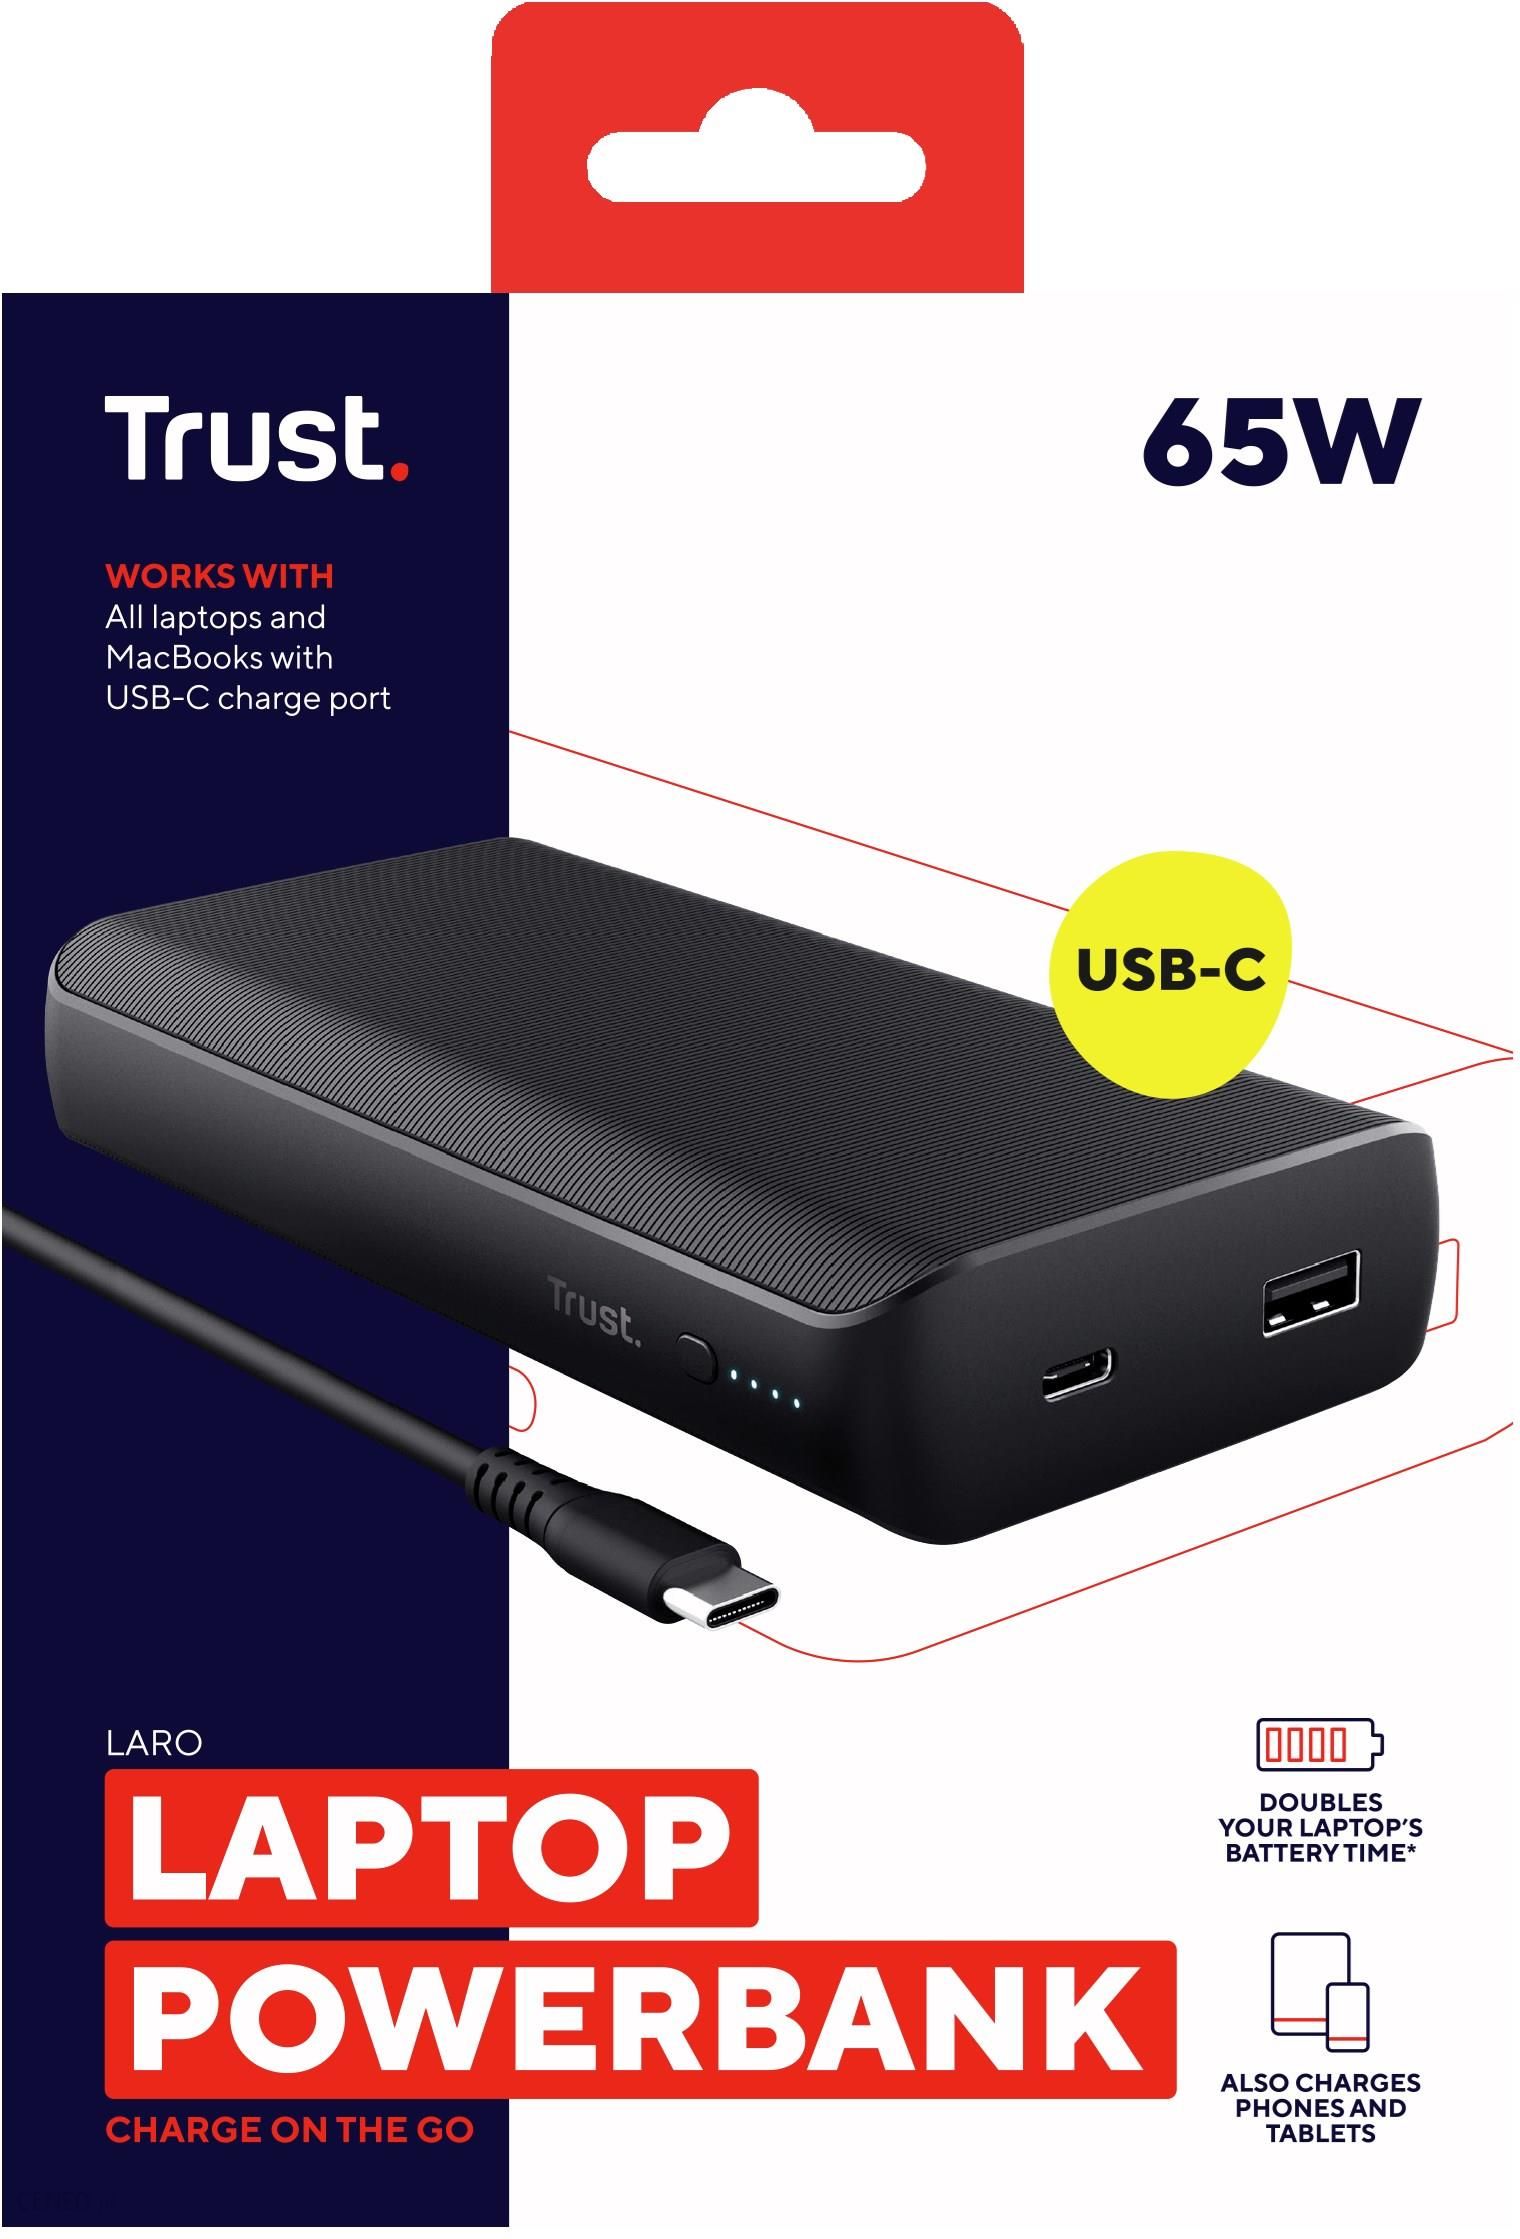  Laro 65W USB-C Laptop Powerbank